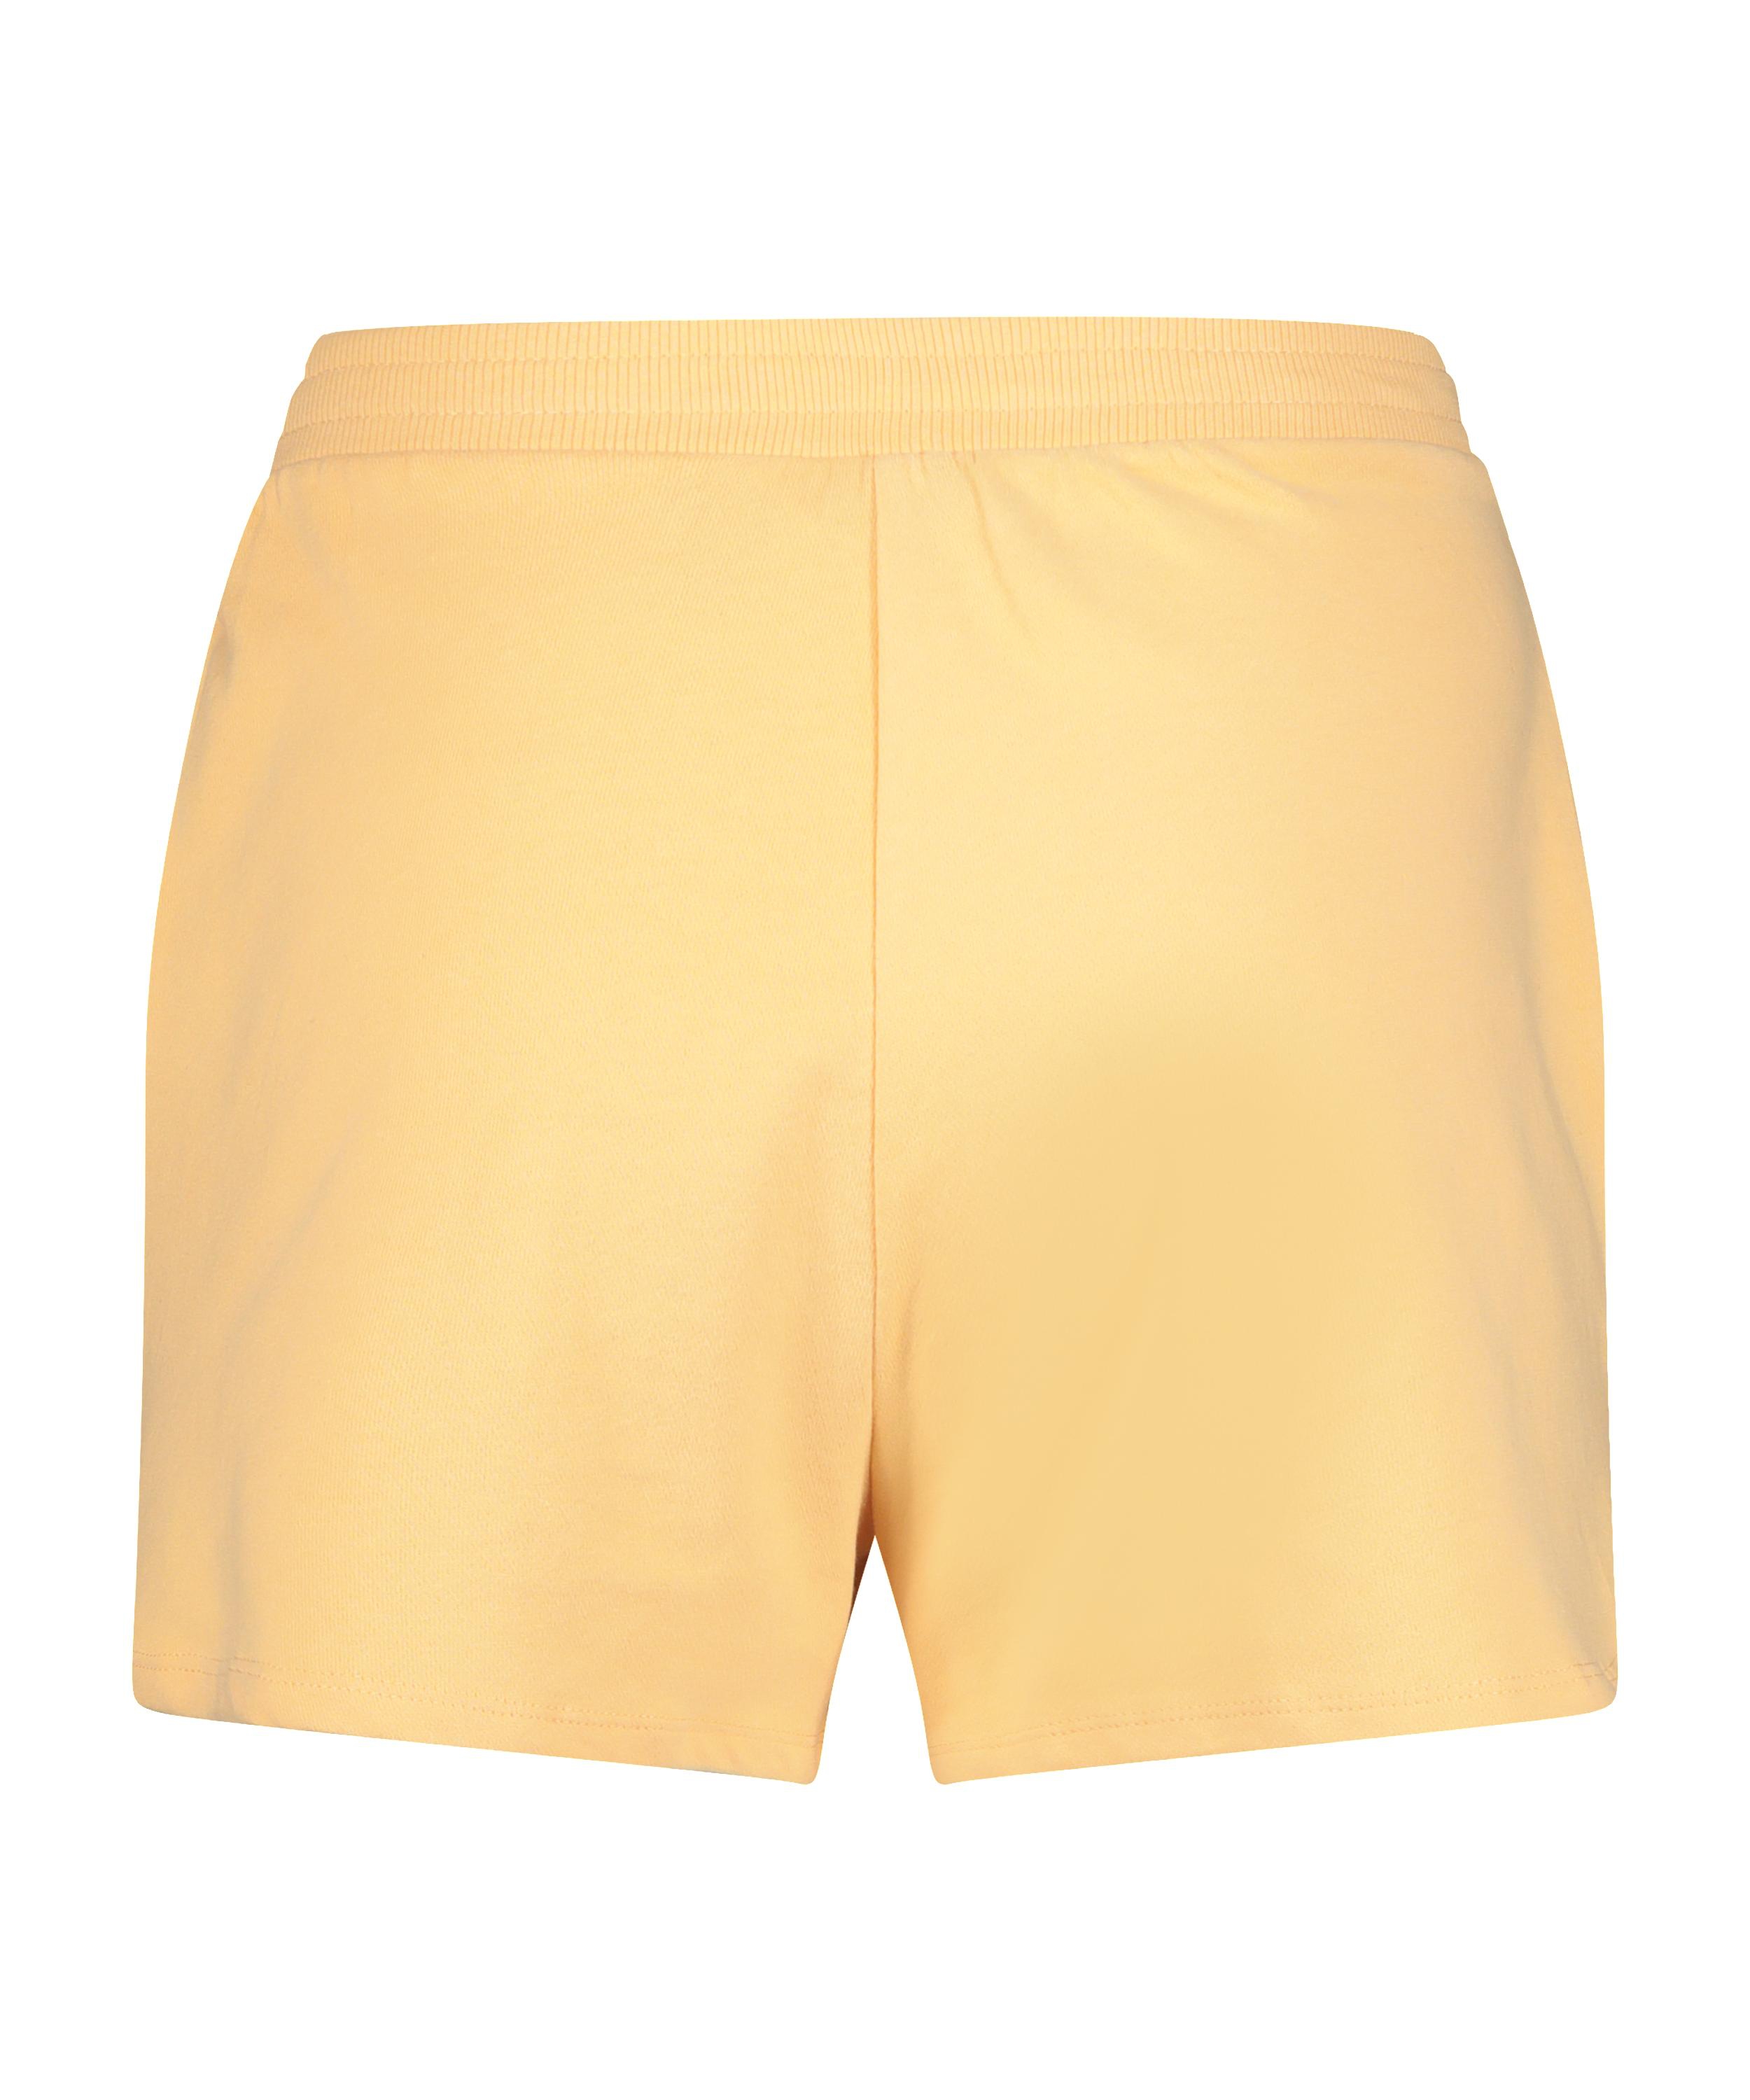 Sweat French Shorts, Orange, main